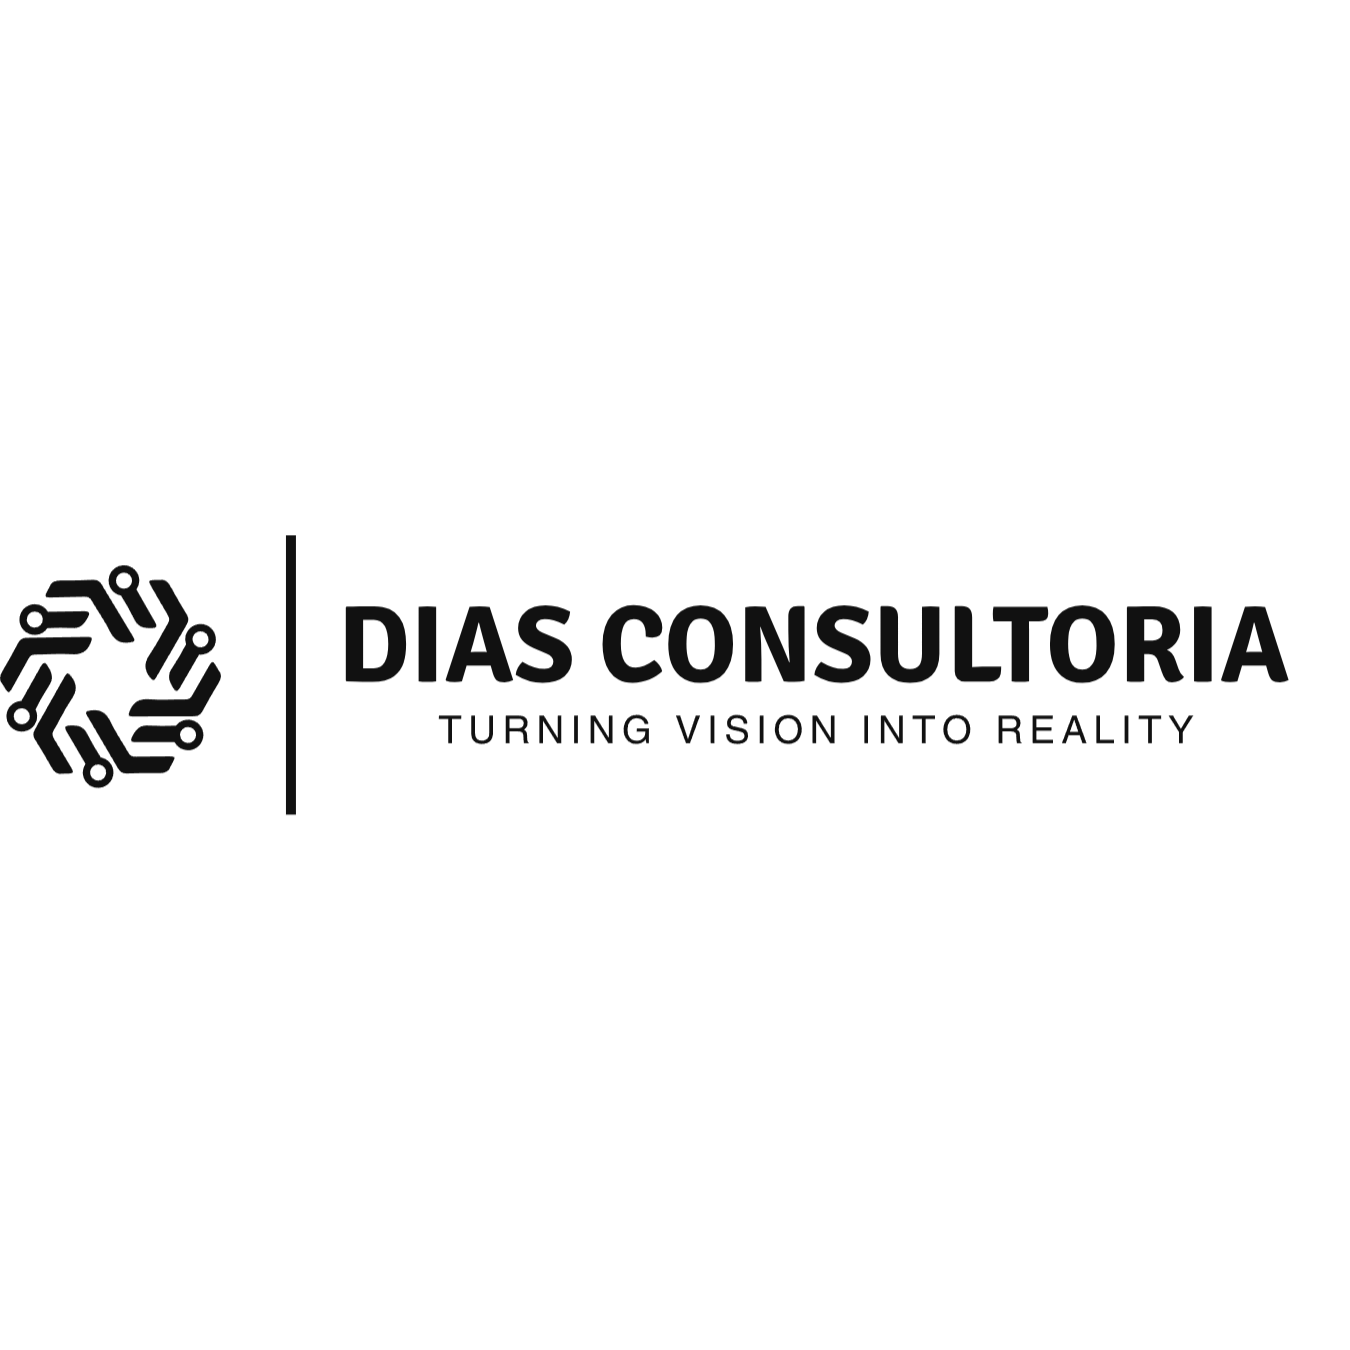 Tiago Dias Consultoria